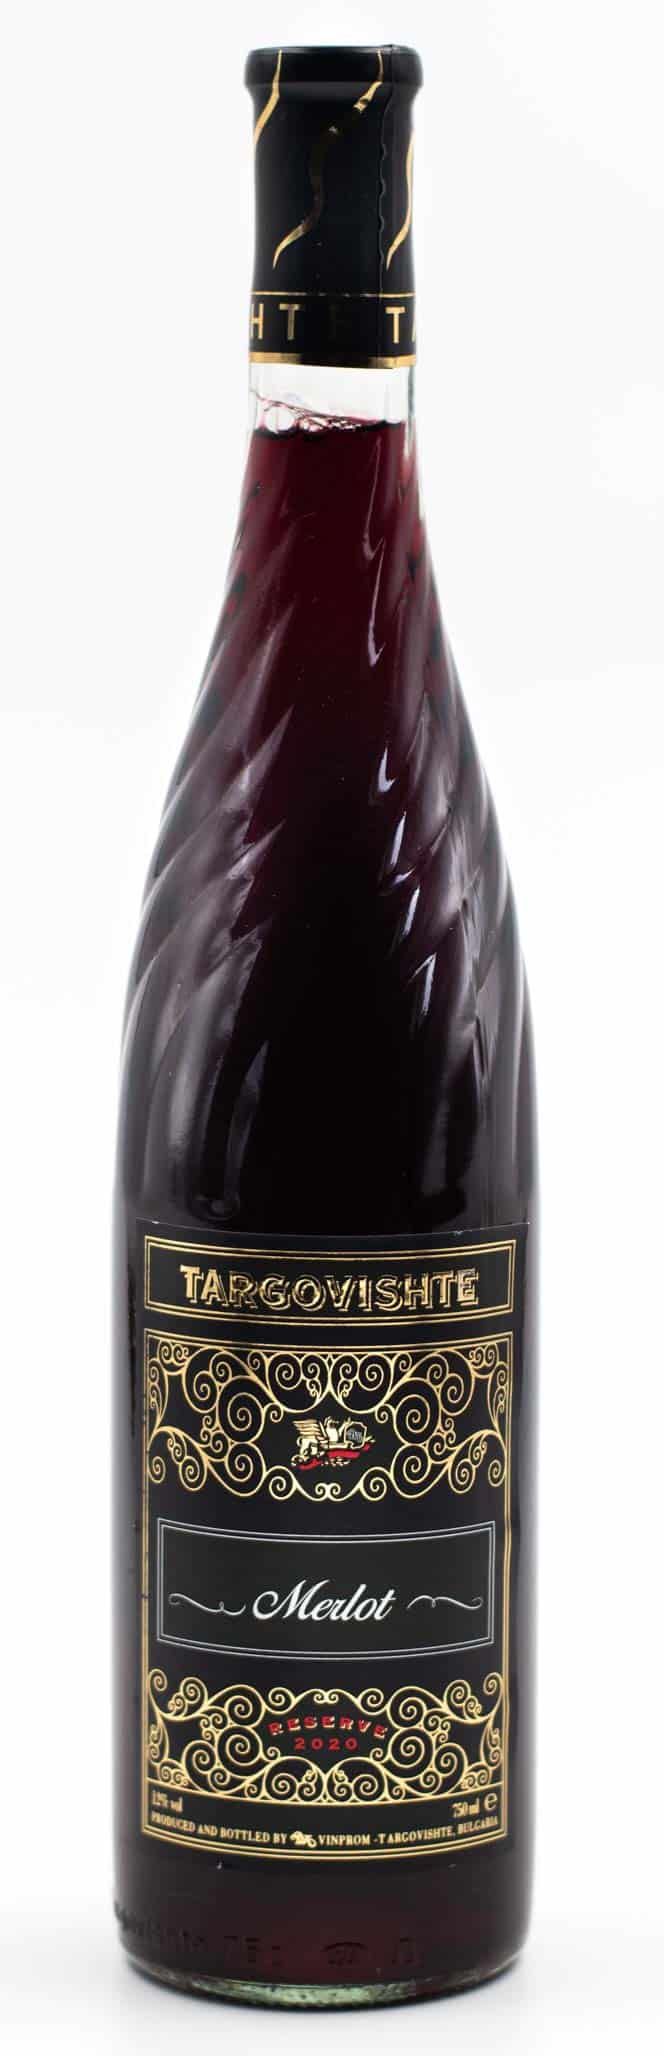 Bulharské víno Merlot Targovishte prowine